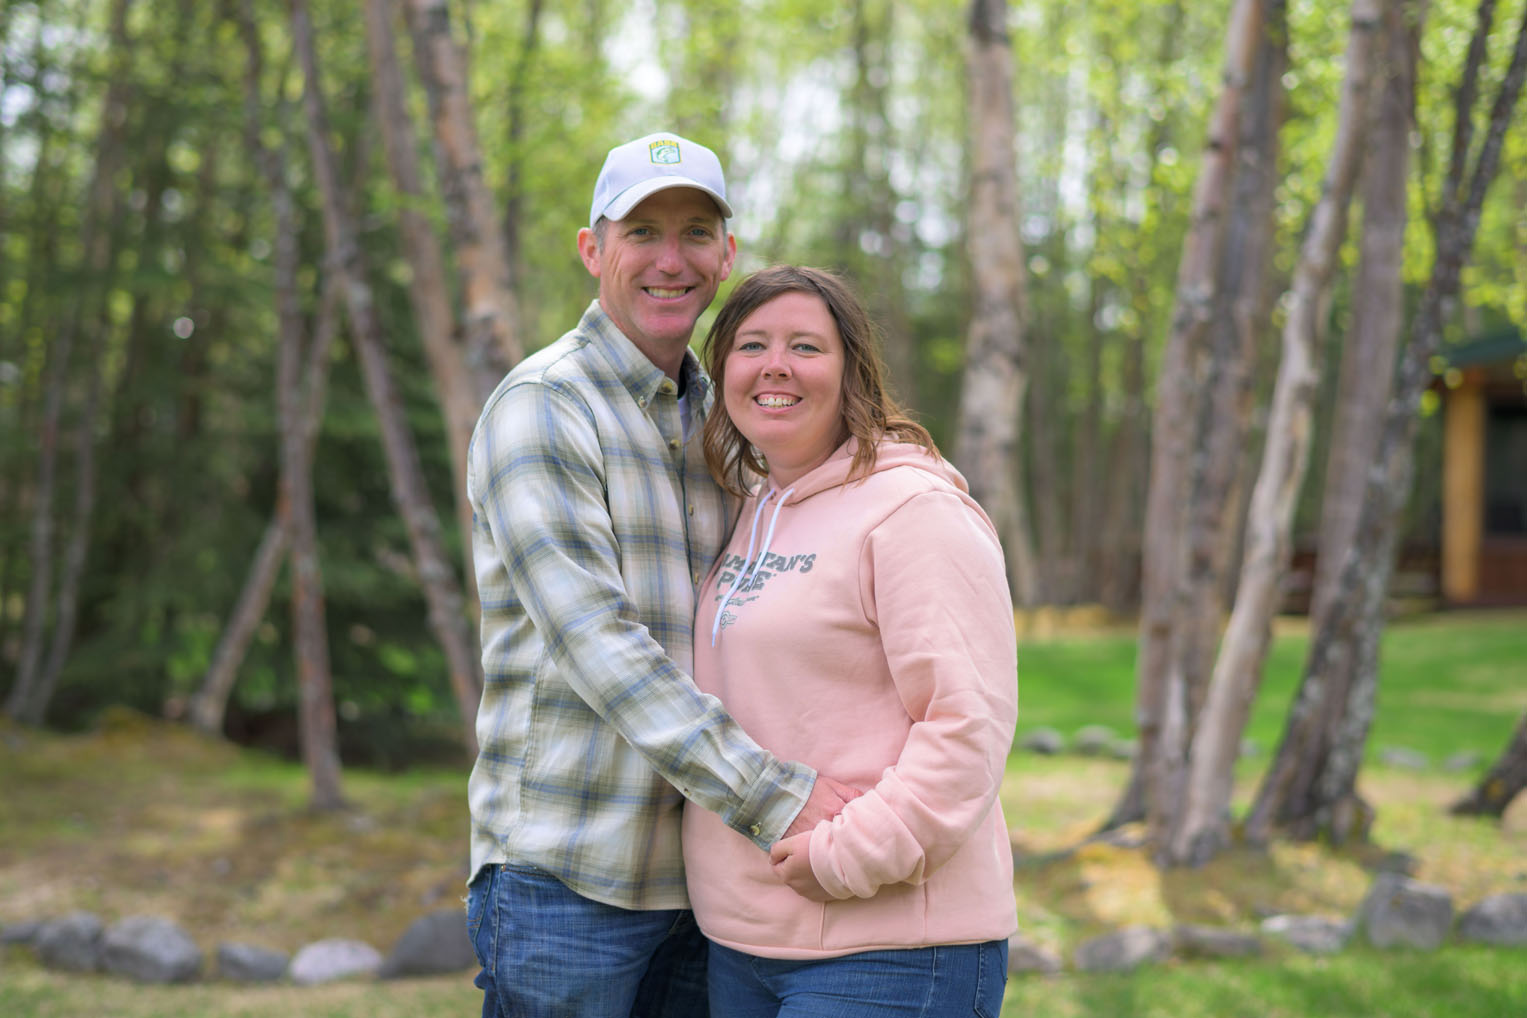 Chad and Emily had a life-changing week at Samaritan Lodge Alaska.